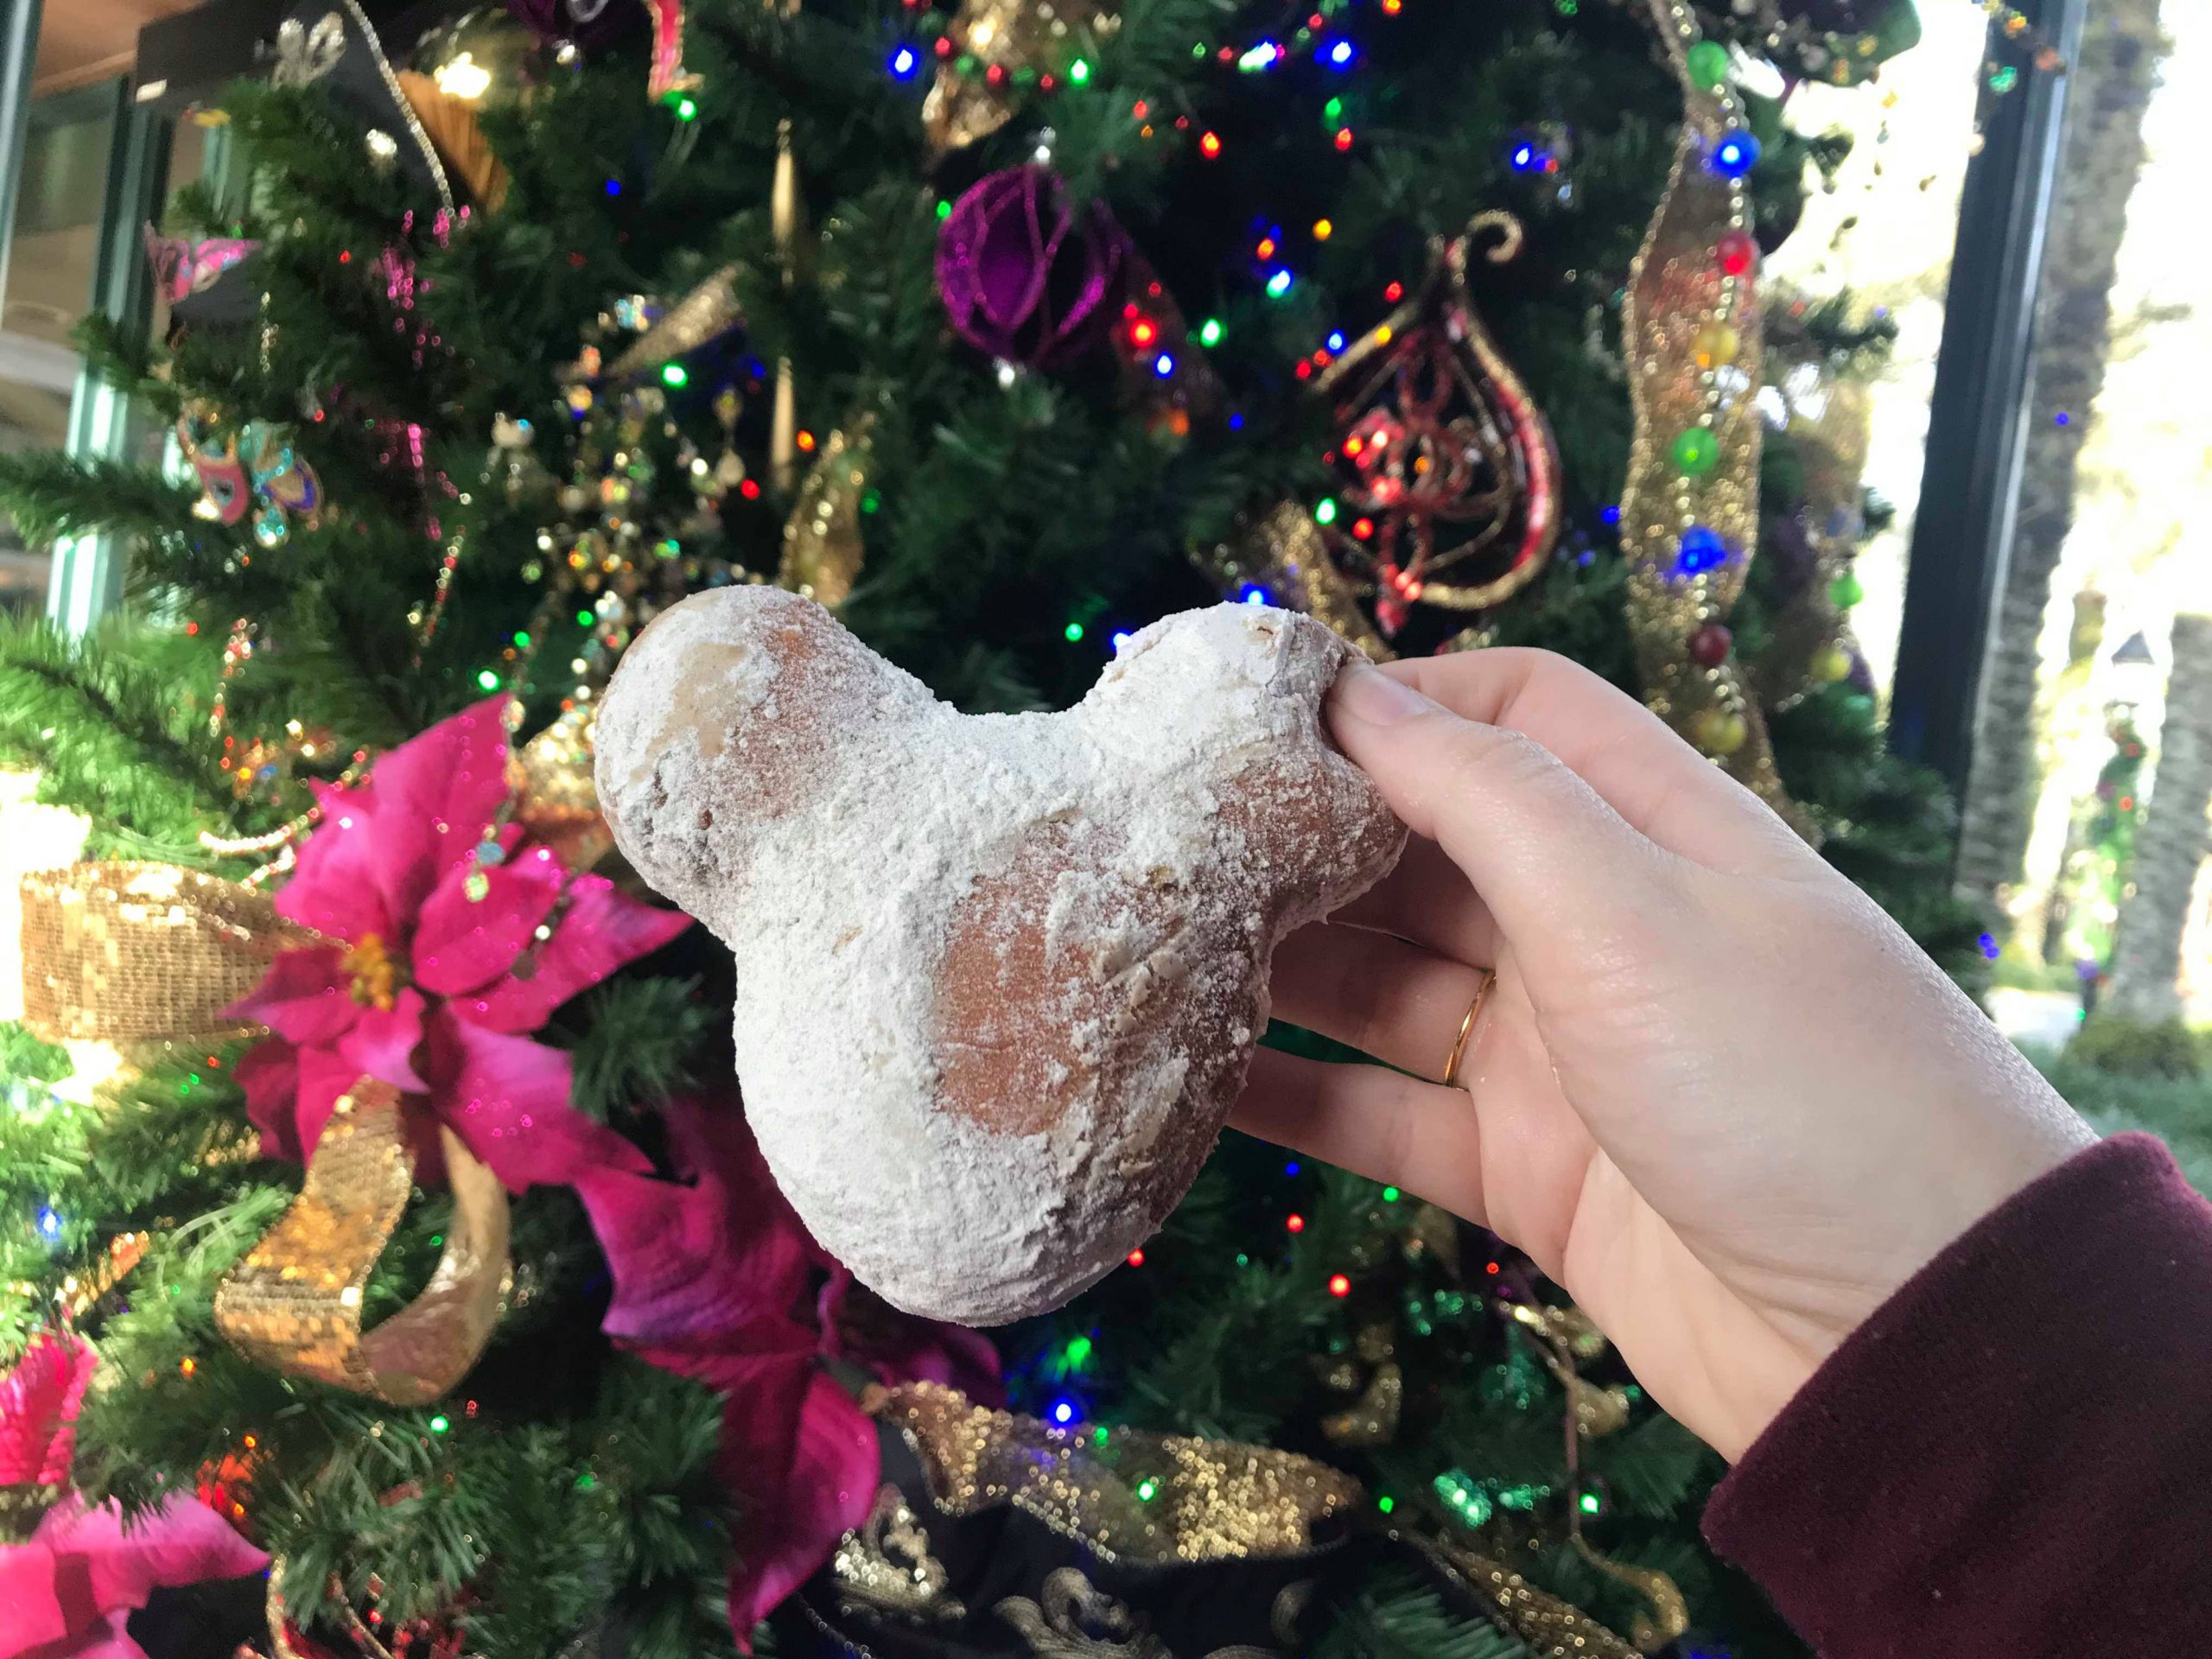 Gingerbread Beignets Have Returned at Disney’s Port Orleans Resort